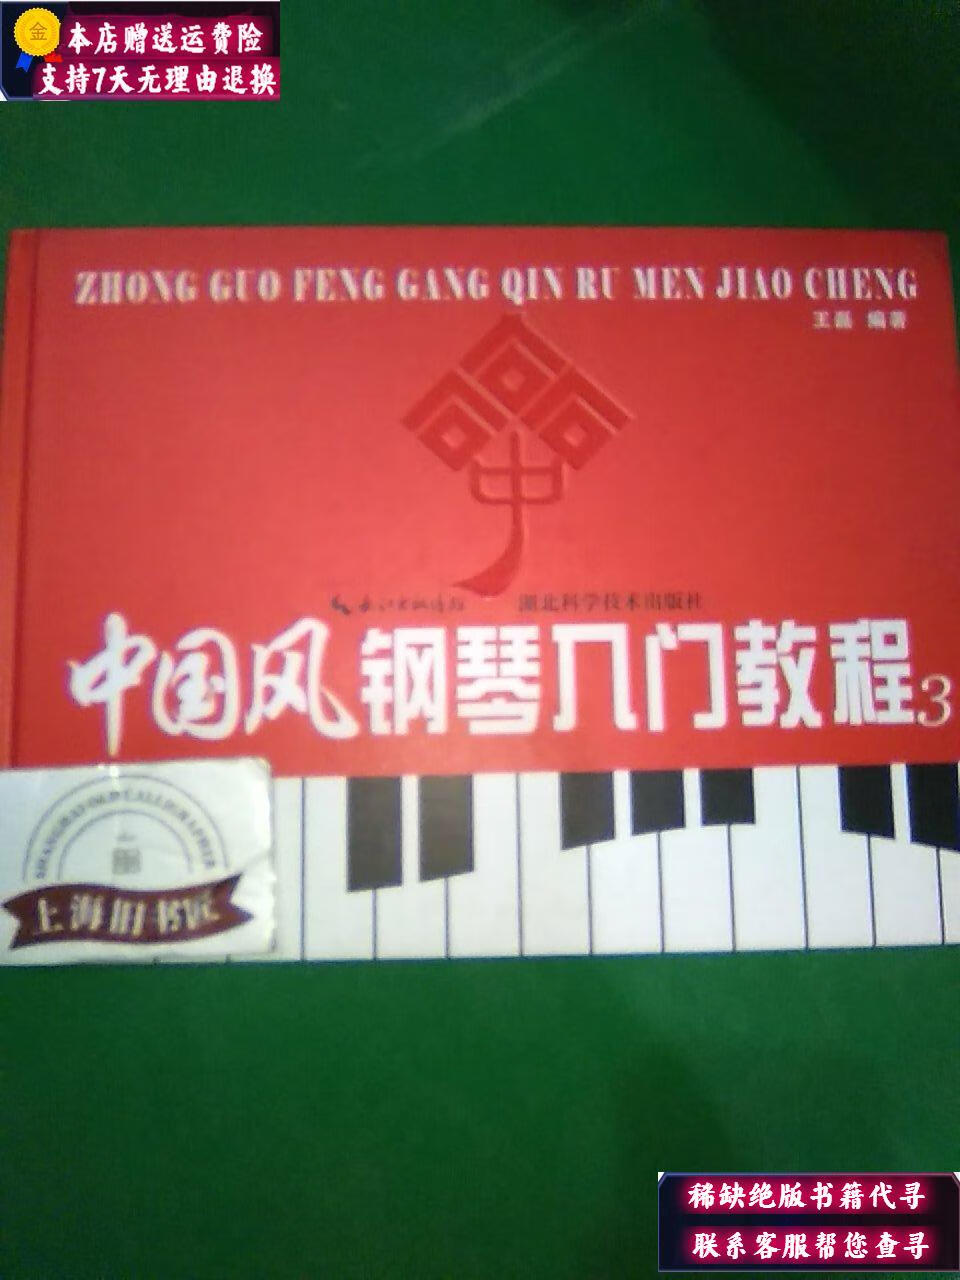 包含中国风钢琴入门教程3阿细跳月伴奏的词条